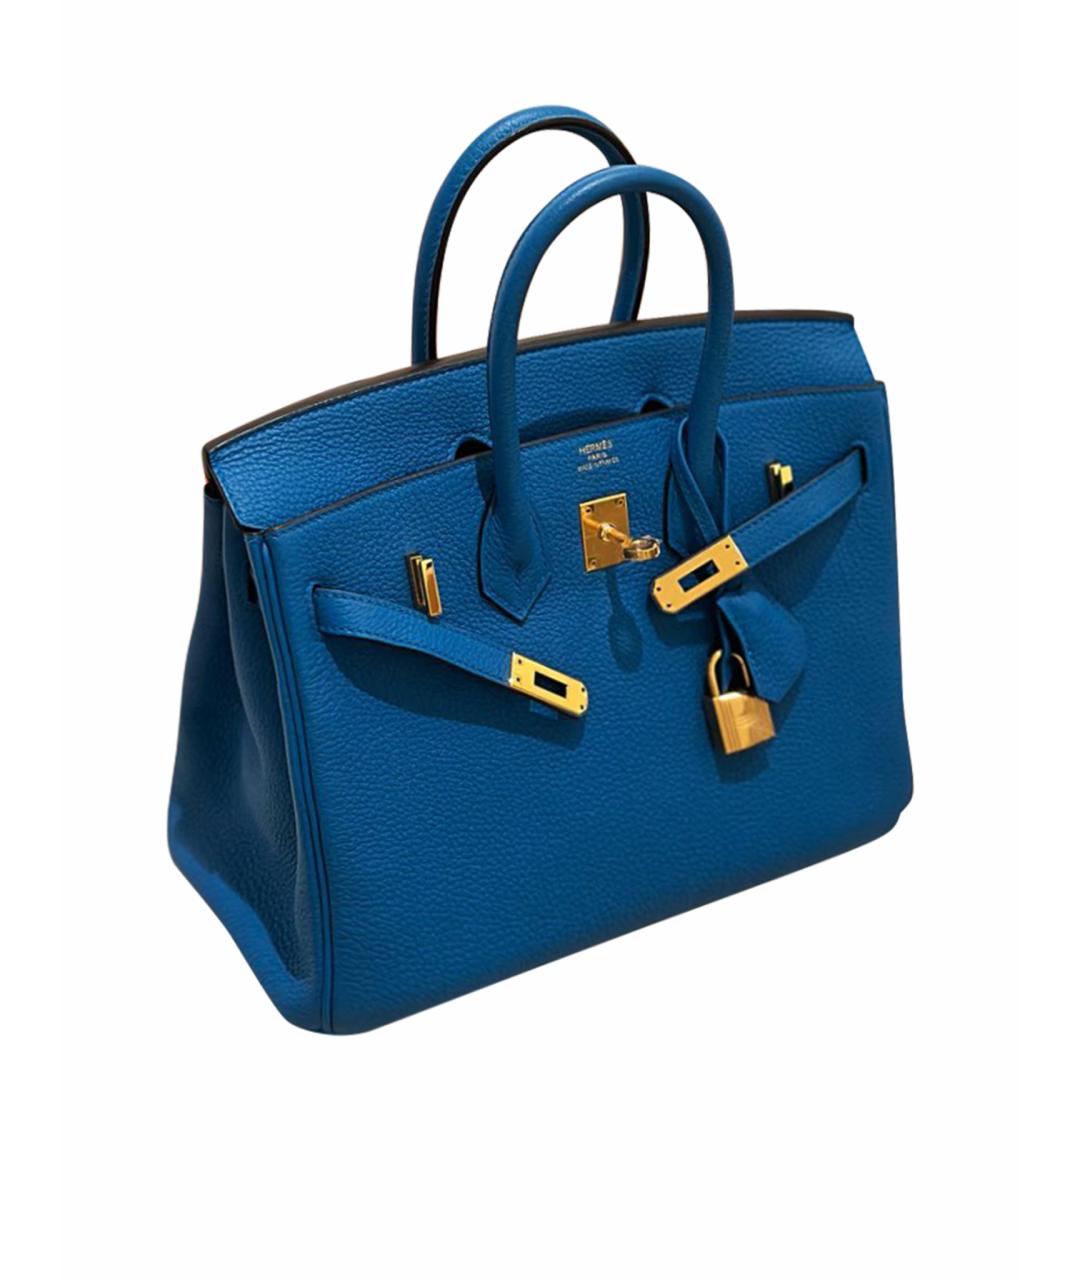 HERMES PRE-OWNED Синяя кожаная сумка с короткими ручками, фото 1